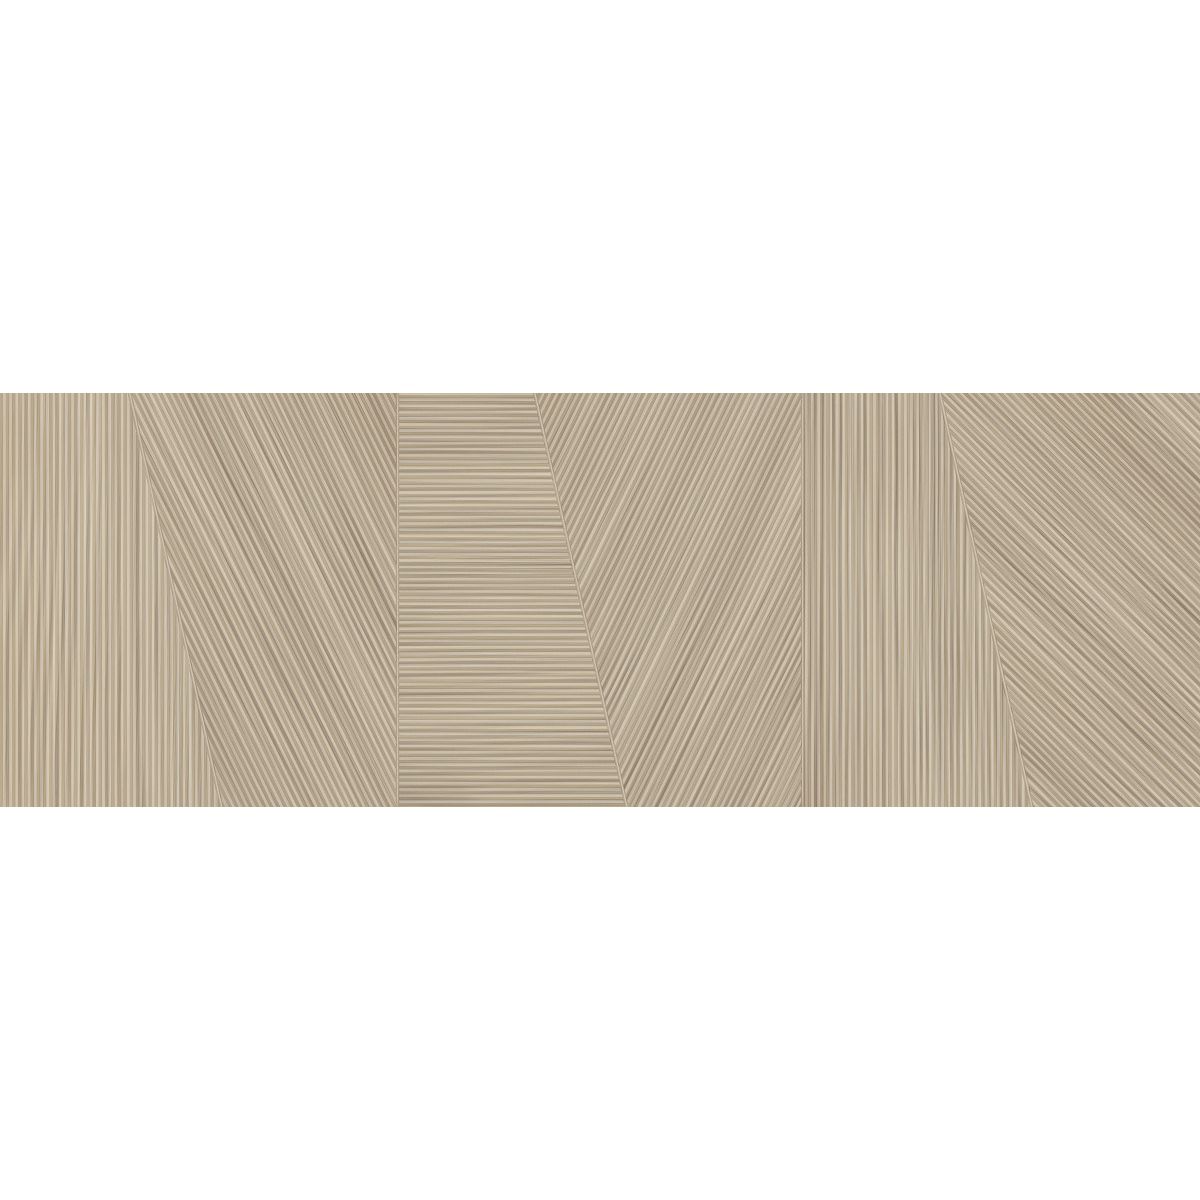 Настенная плитка Керлайф Legno Noce 24,2x70 см (922339)